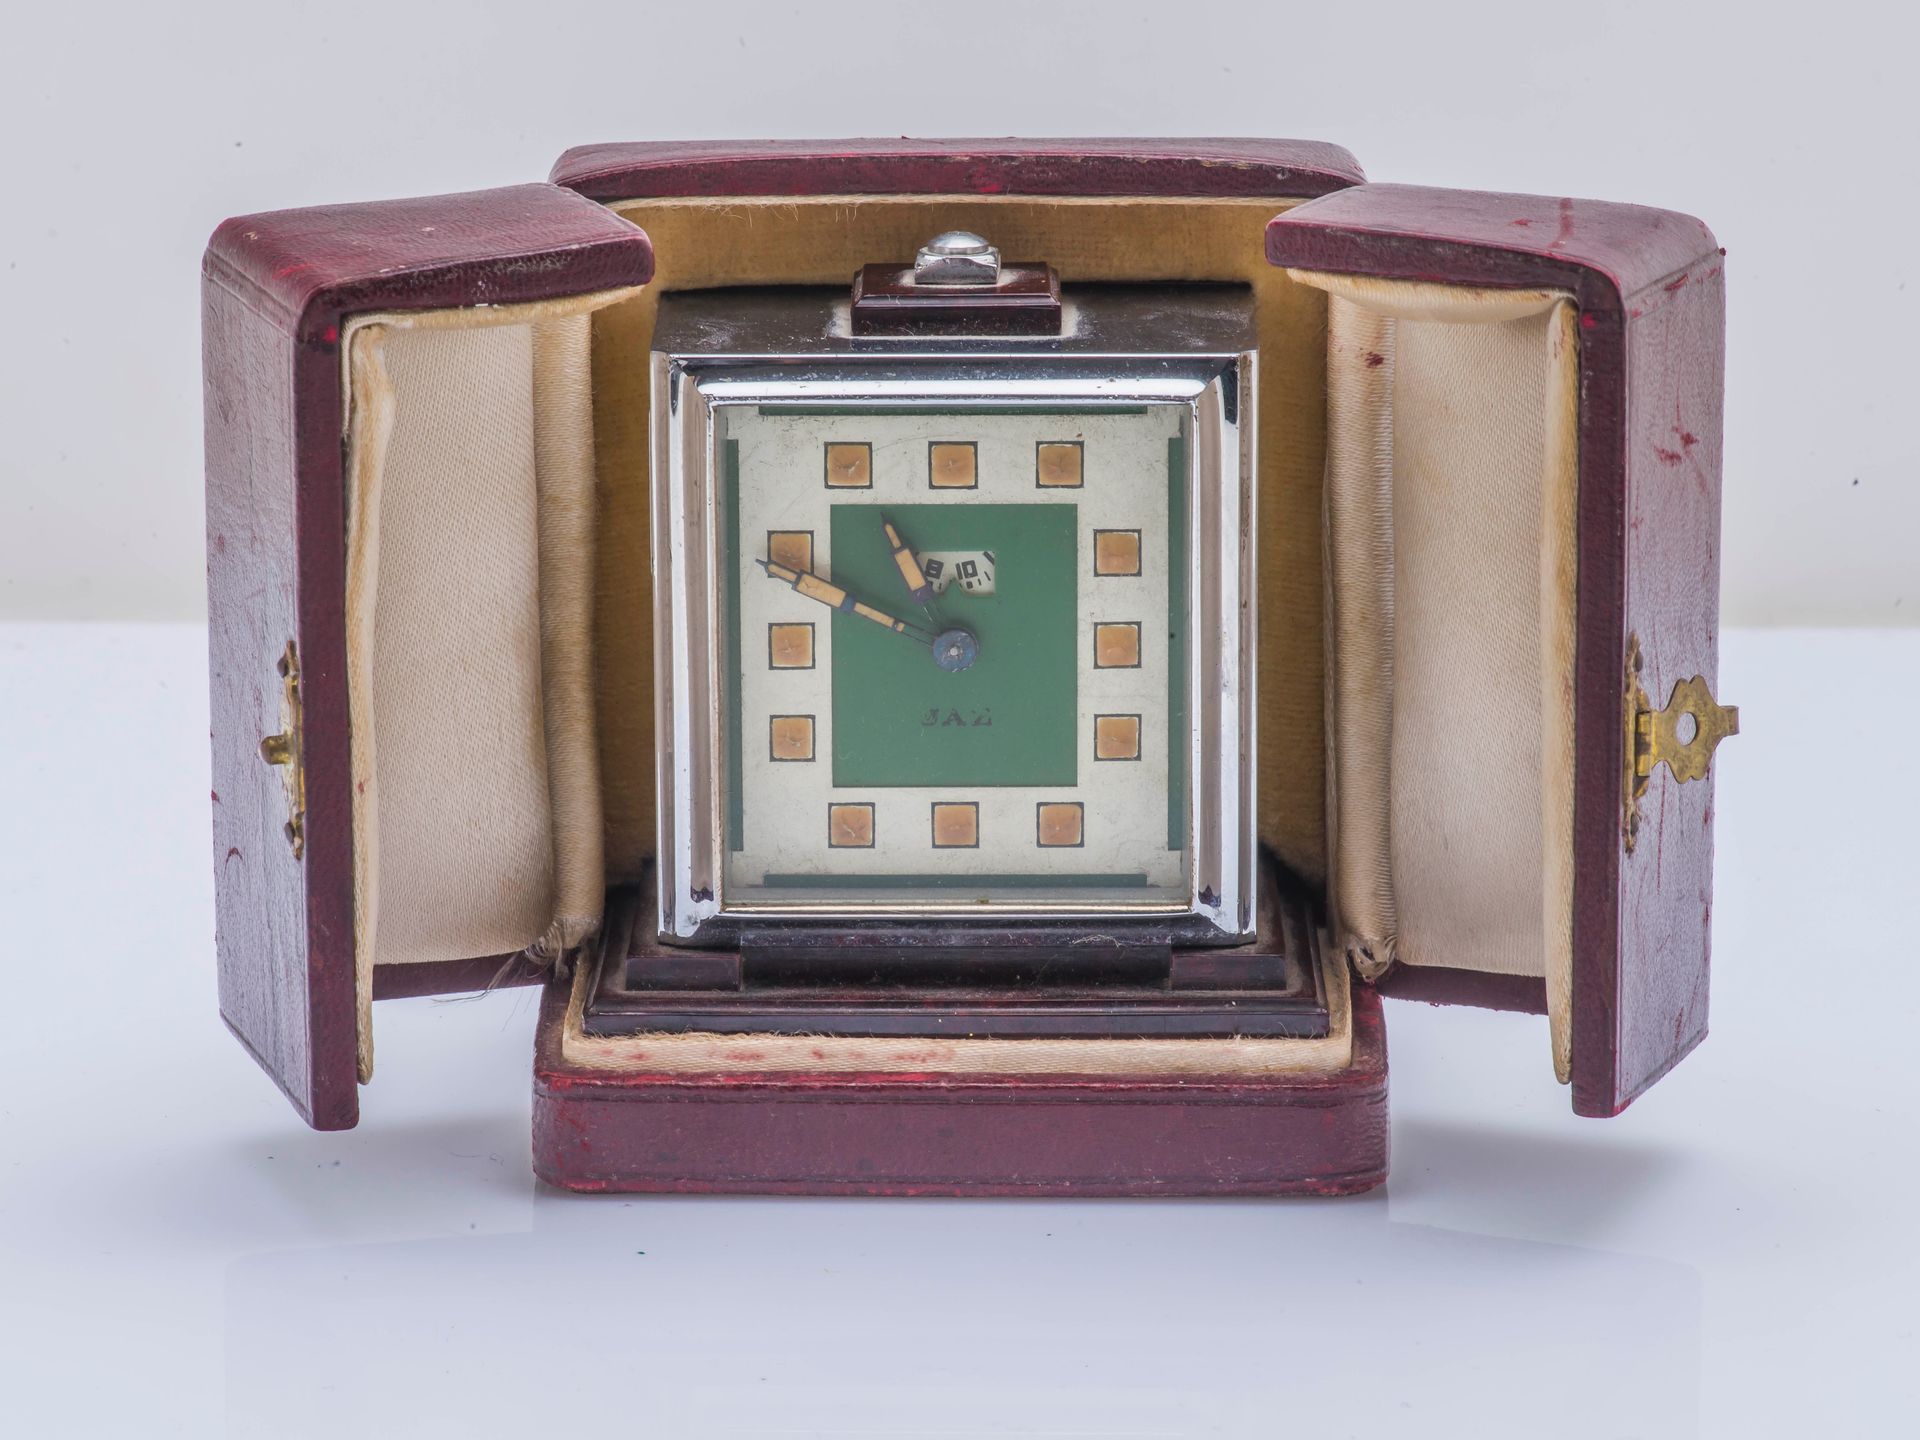 JAZ vers 1930 JAZ约1930年

银色金属旅行闹钟，方形，在仿木质的电木底座上，奶油色和绿色的表盘上有方形的发光指示器，12点钟位置有闹钟时间窗&hellip;